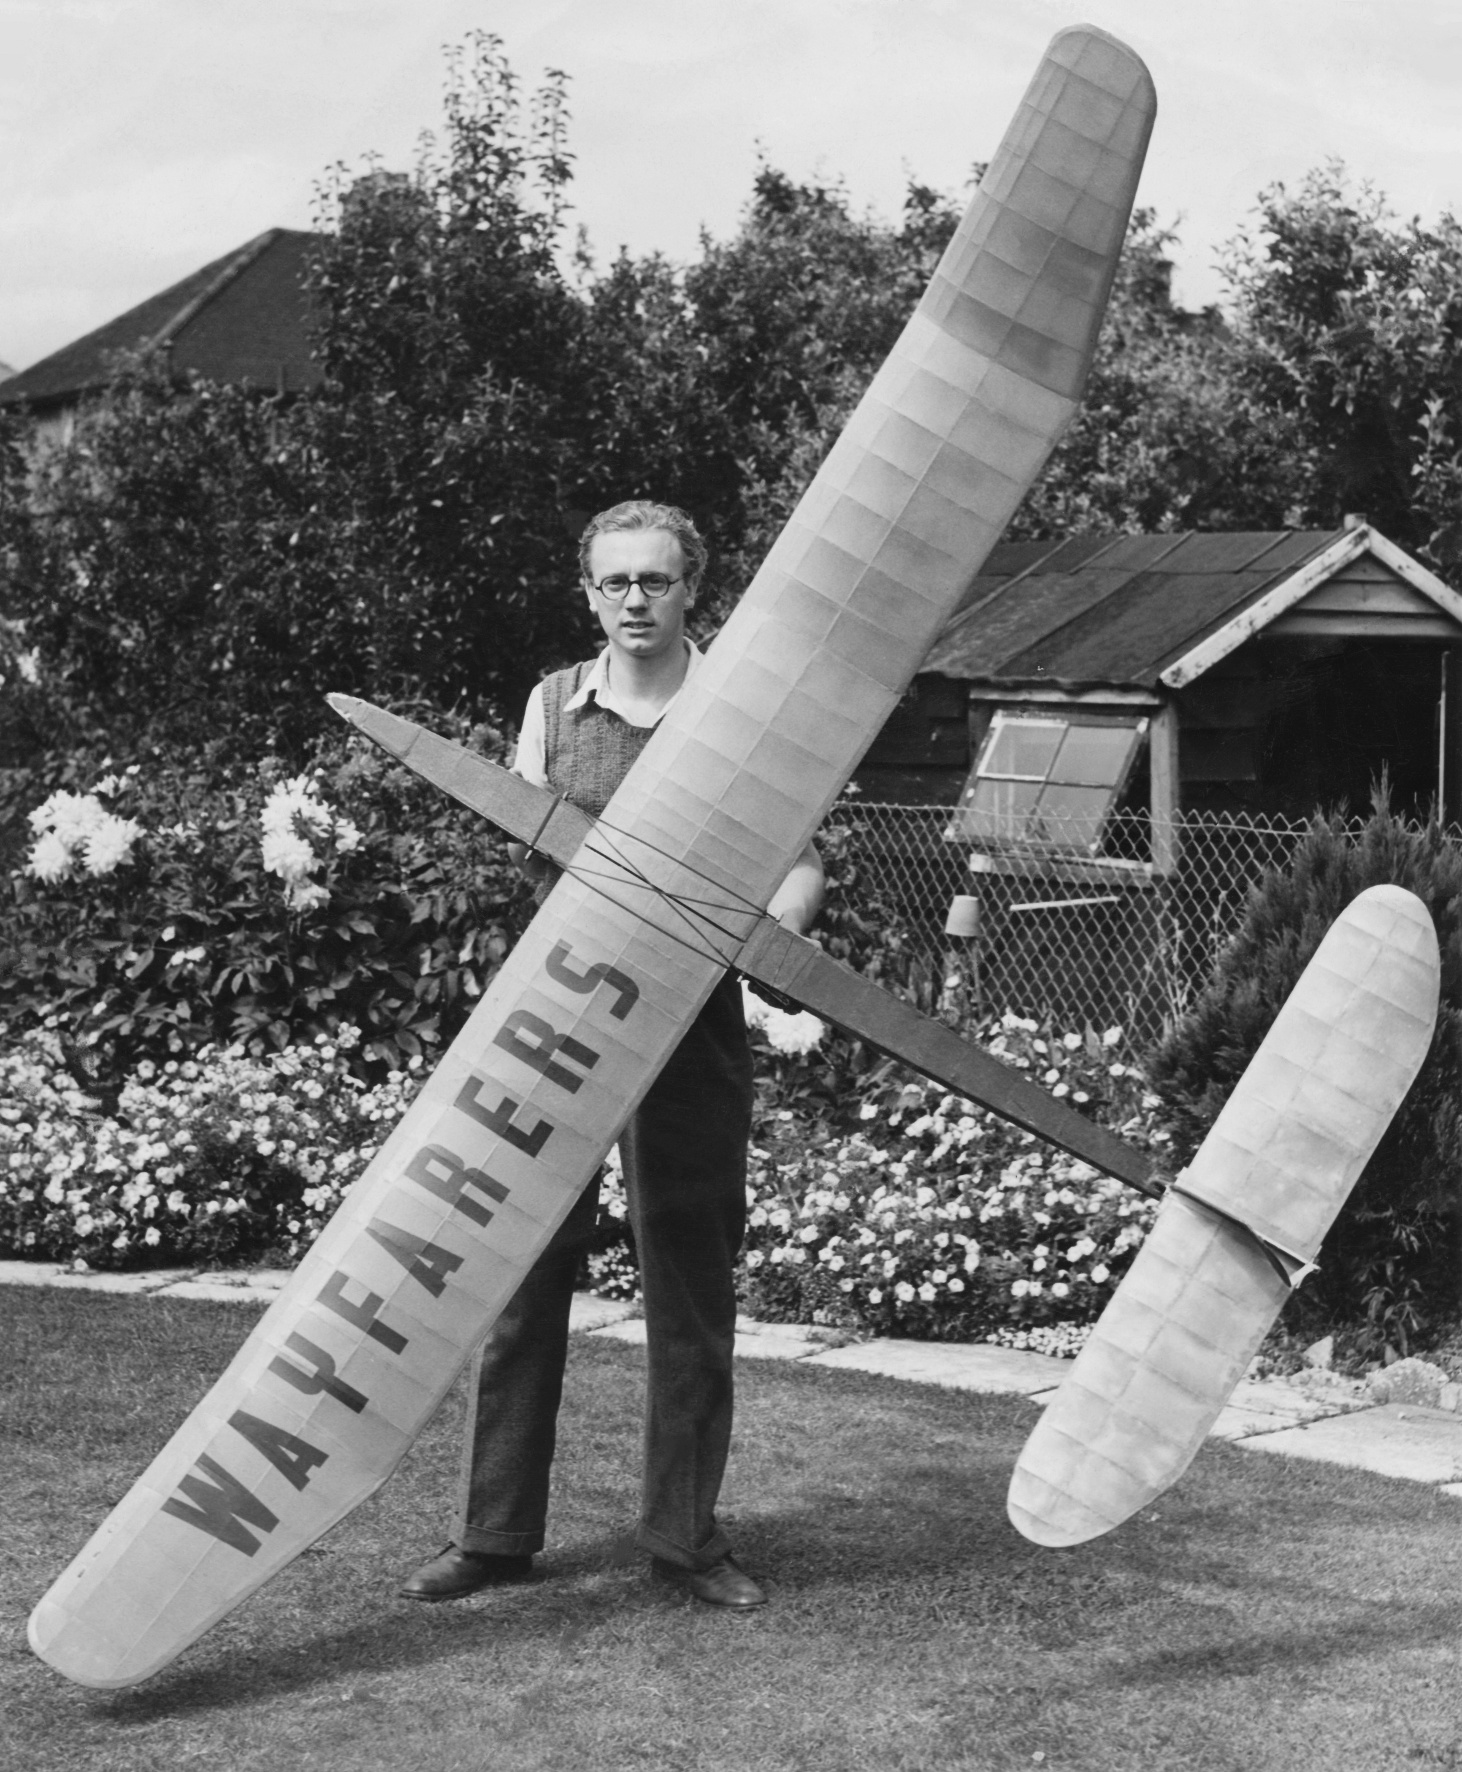 Dennis with a 10 foot sailplane. 1949.